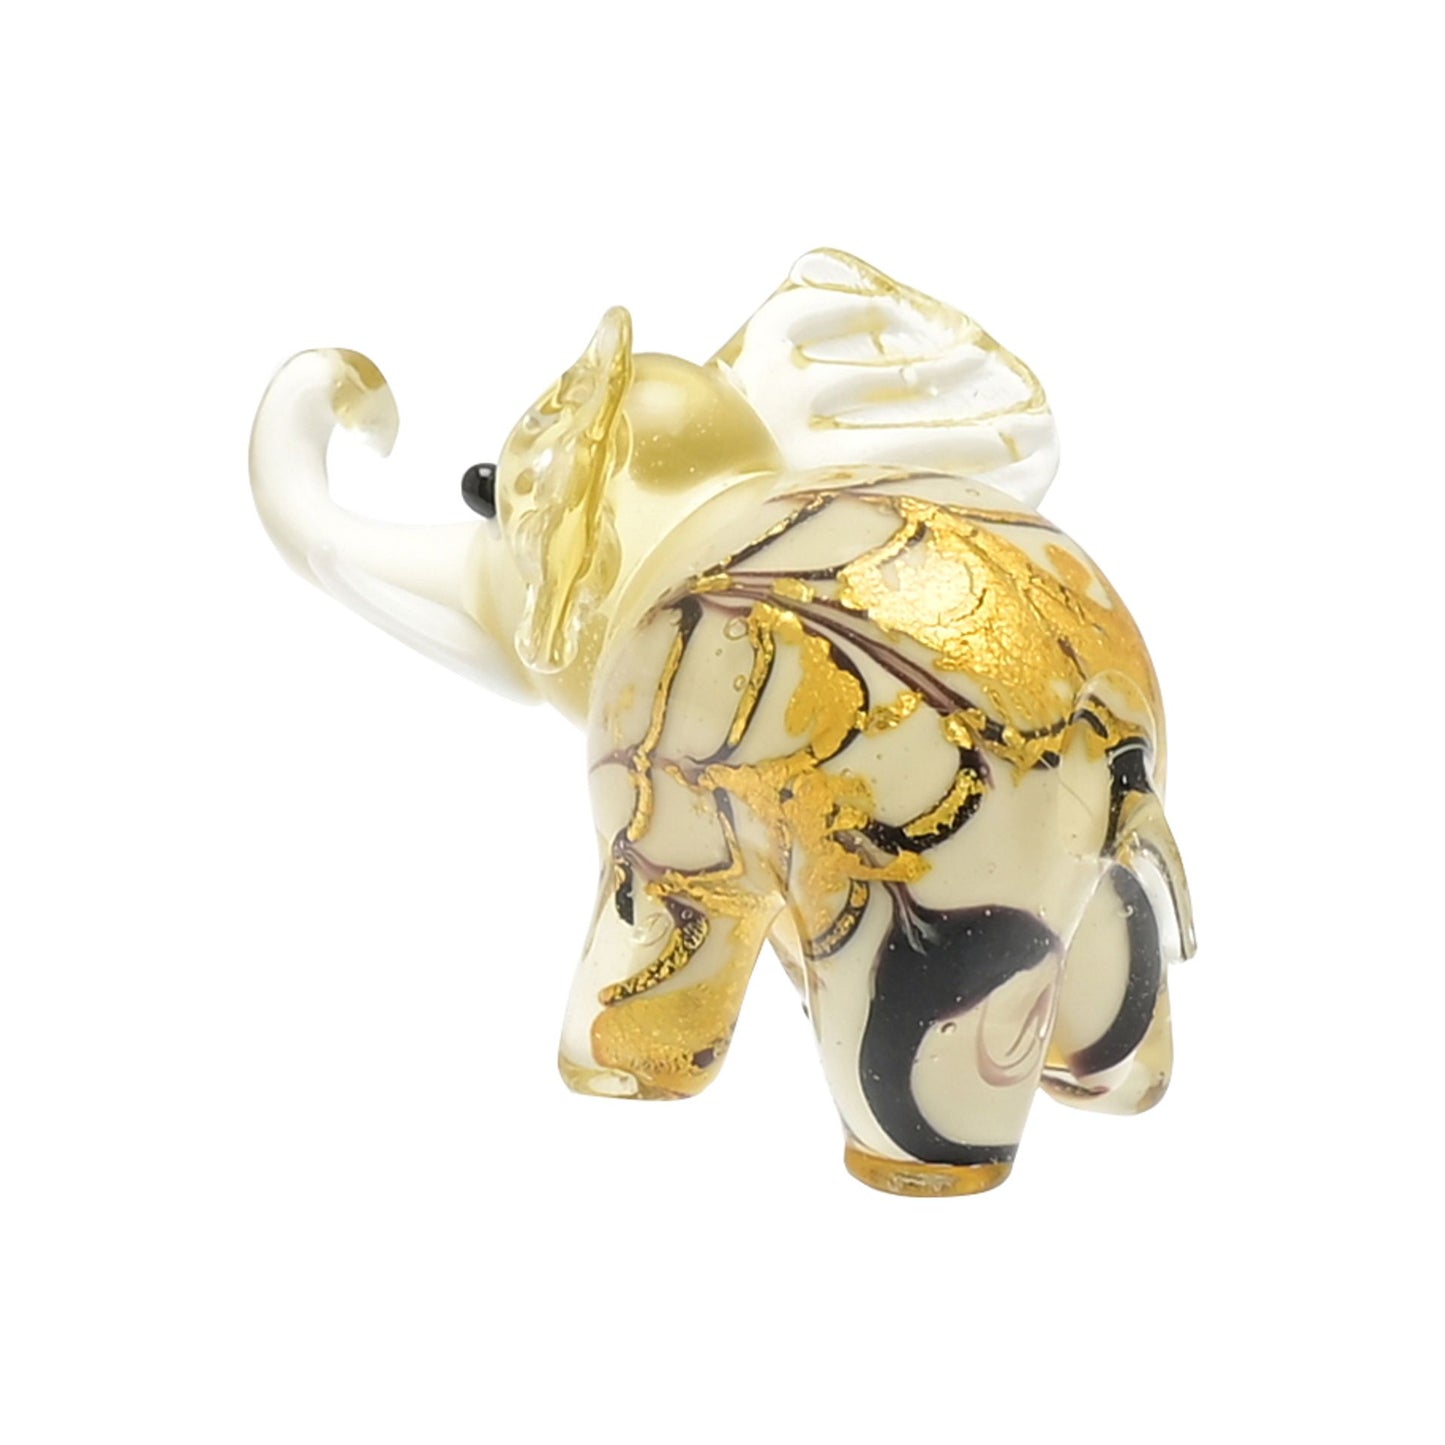 Juliana Objets d'art Small Glass Figurine Brown Golden Elephant Glass Paperweight Ornament 63150